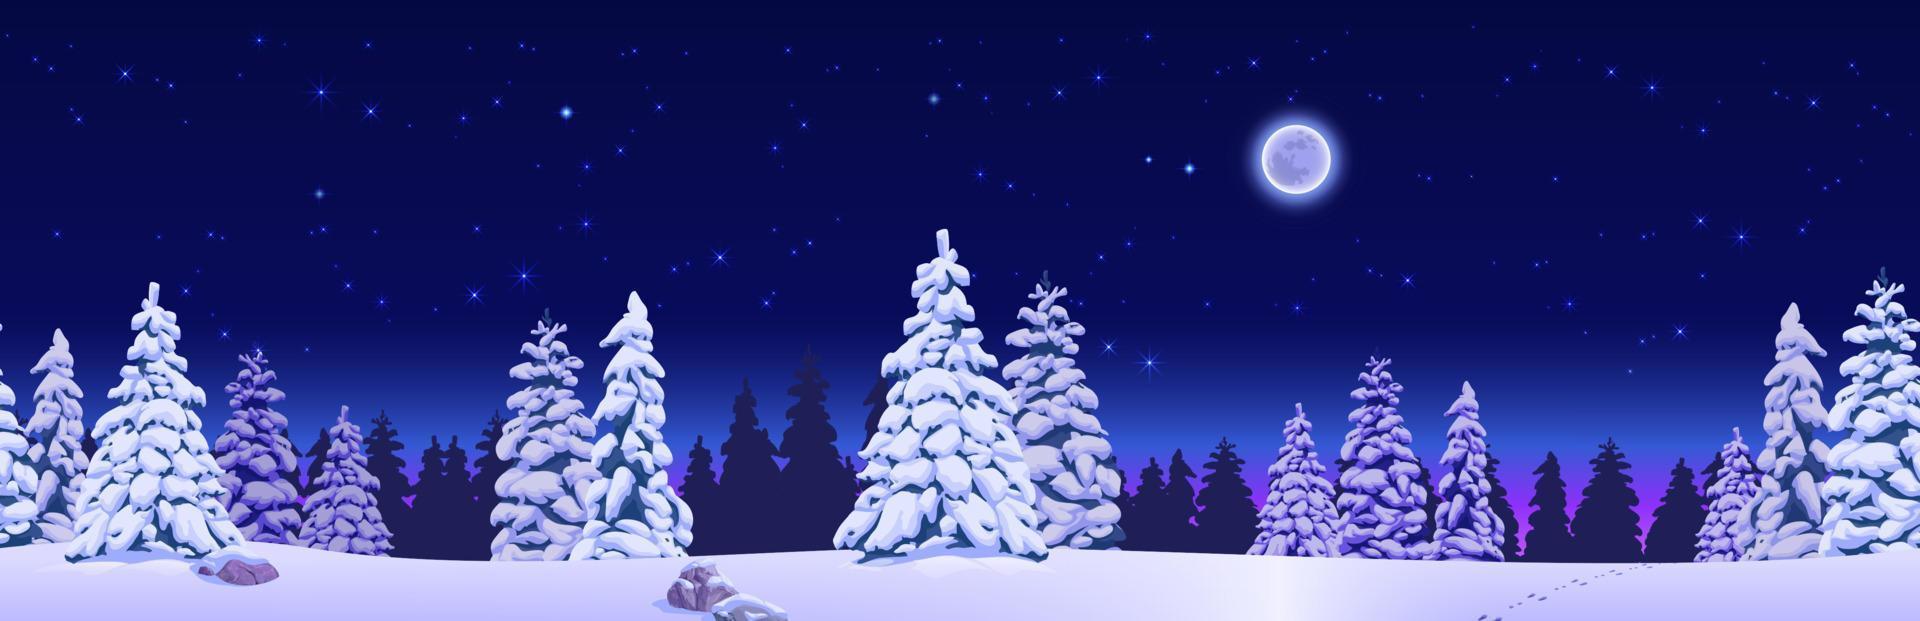 ljus vinter- horisontell landskap av barr- skog - baner för utskrift och design.vector illustration. vektor